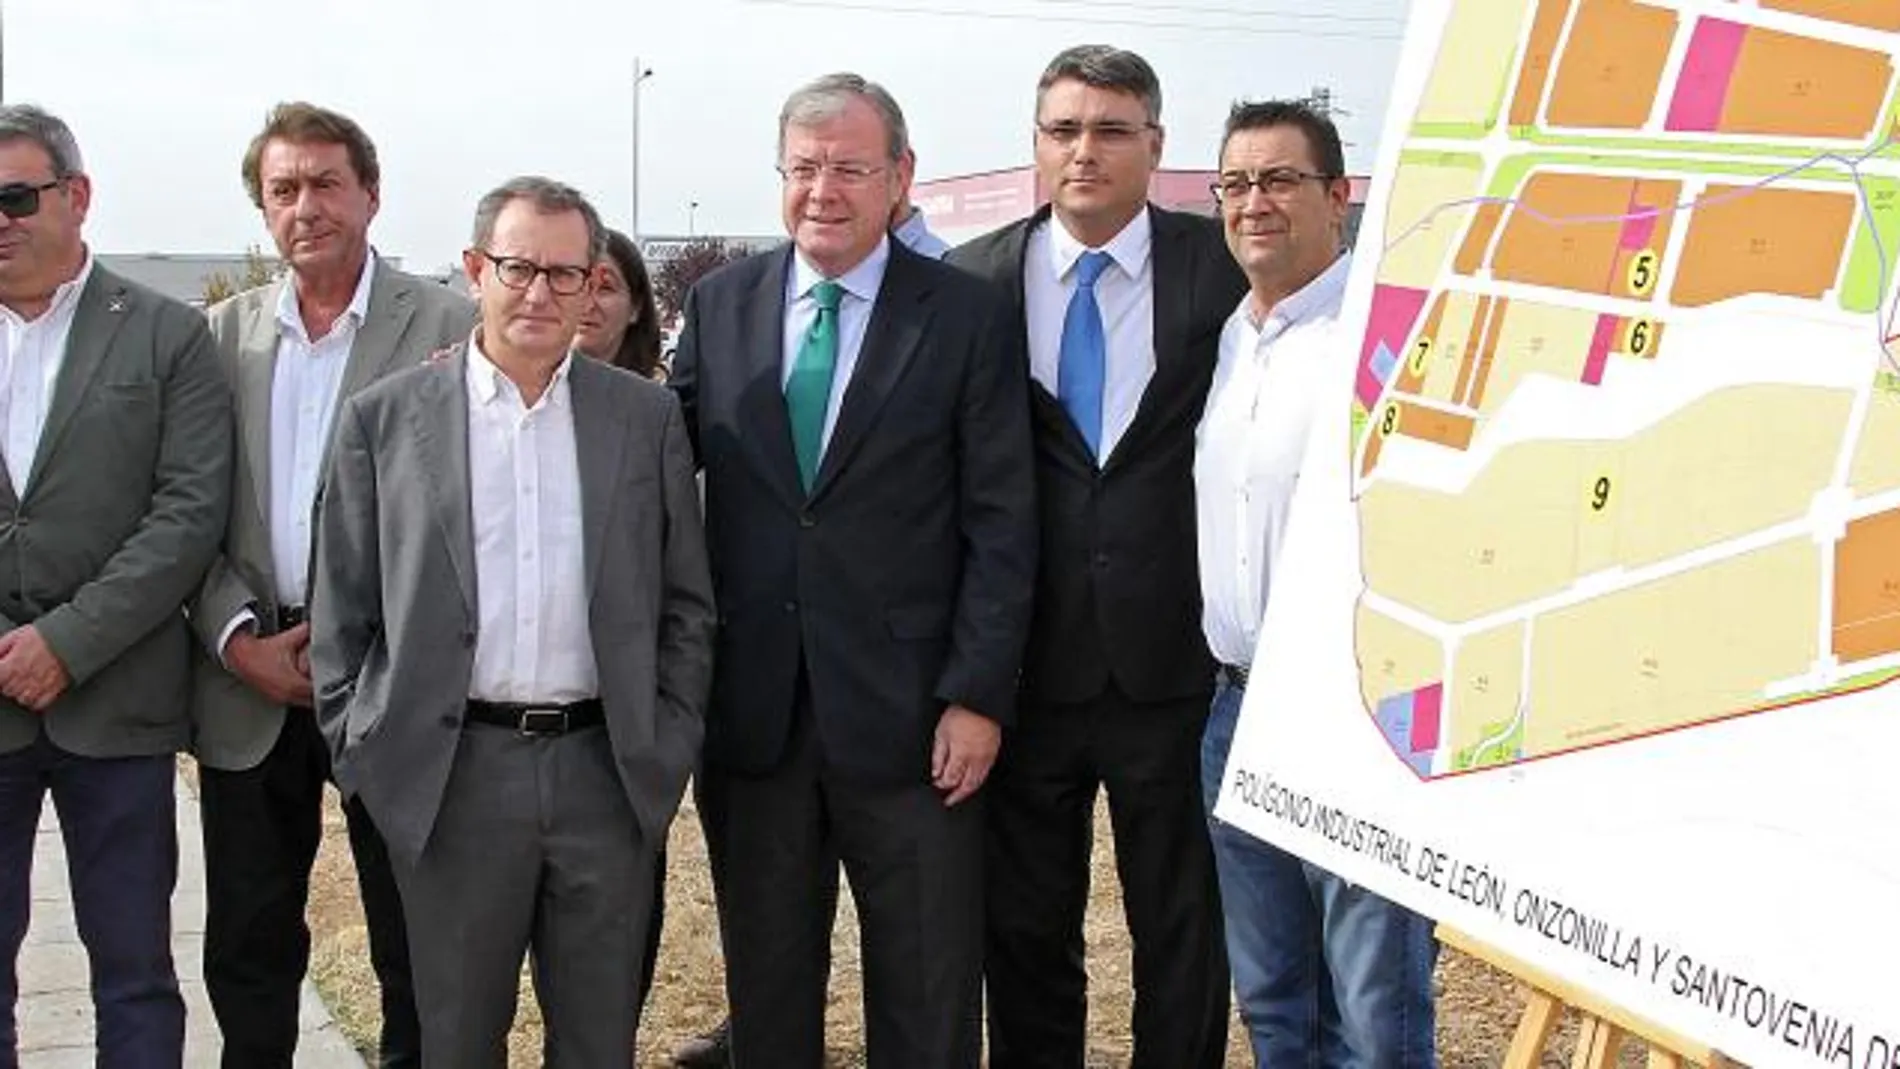 Antonio Silván junto a alcaldes y concejales de Onzonilla y Santovenia en el Polígono Industrial leonés